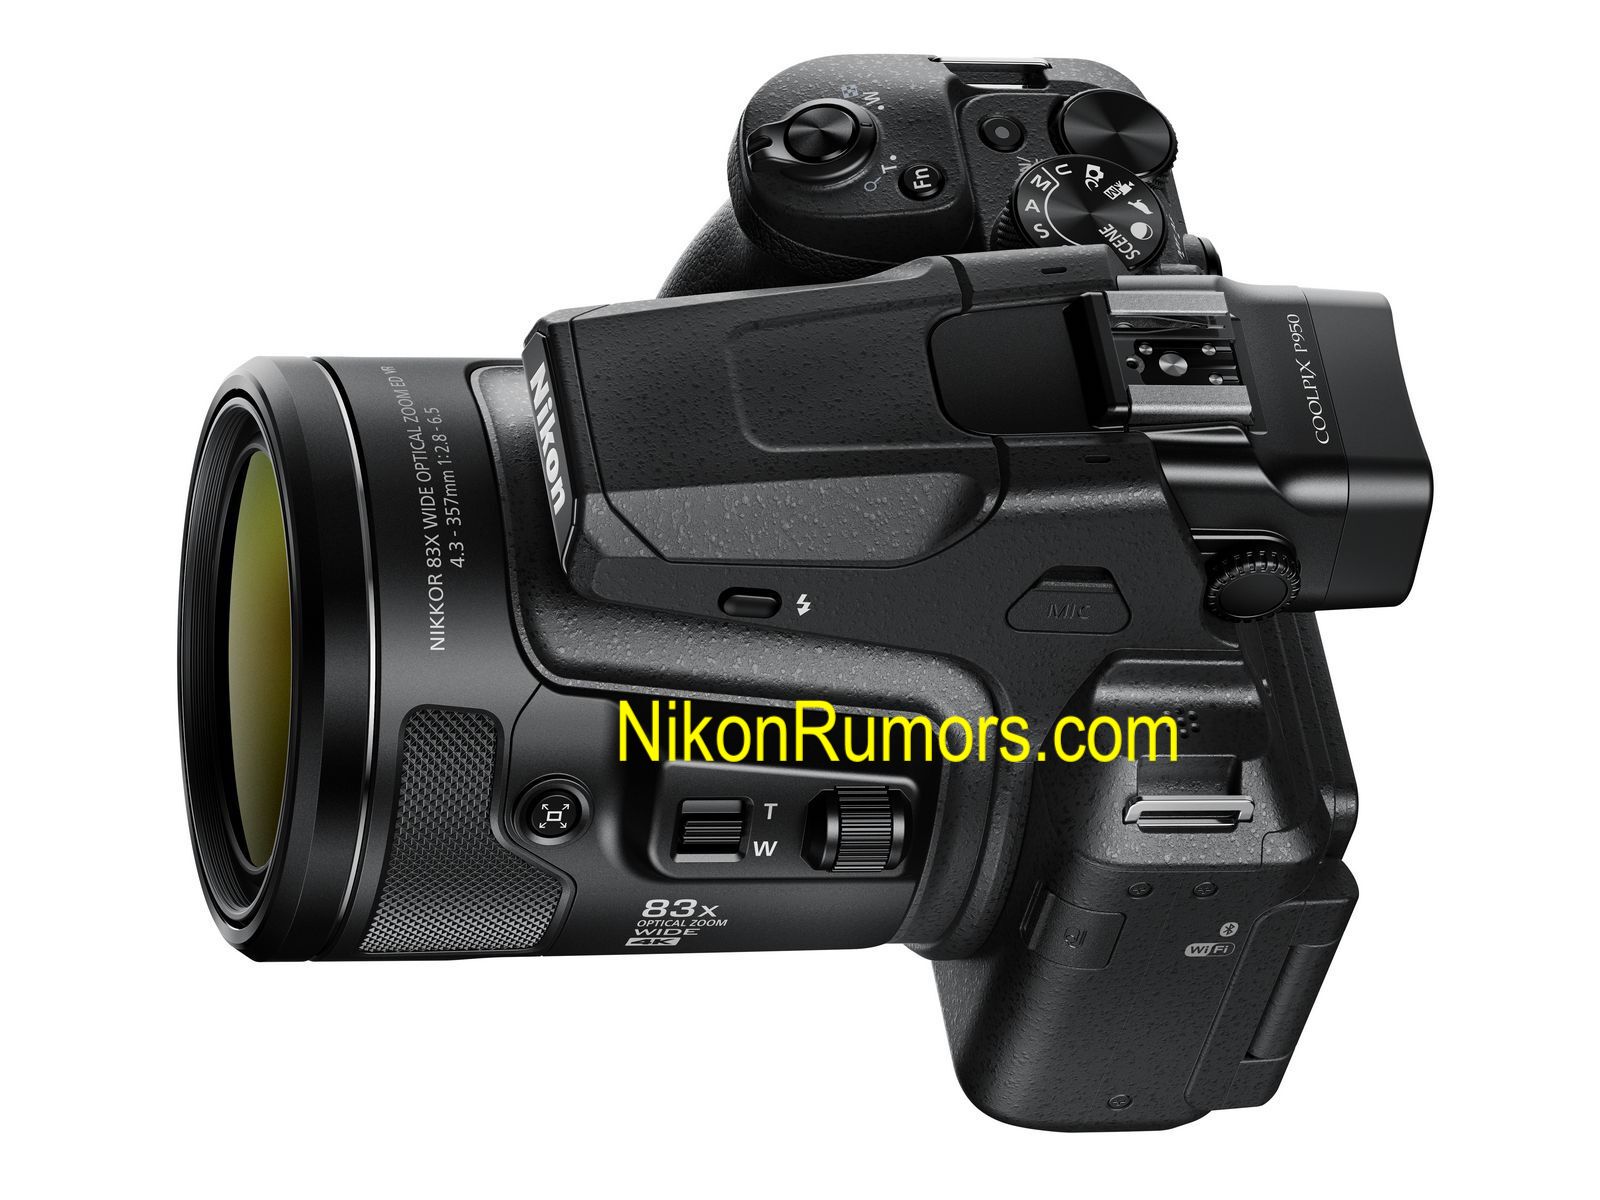 Nikon Coolpix P950 camera leaked photos - Nikon Rumors